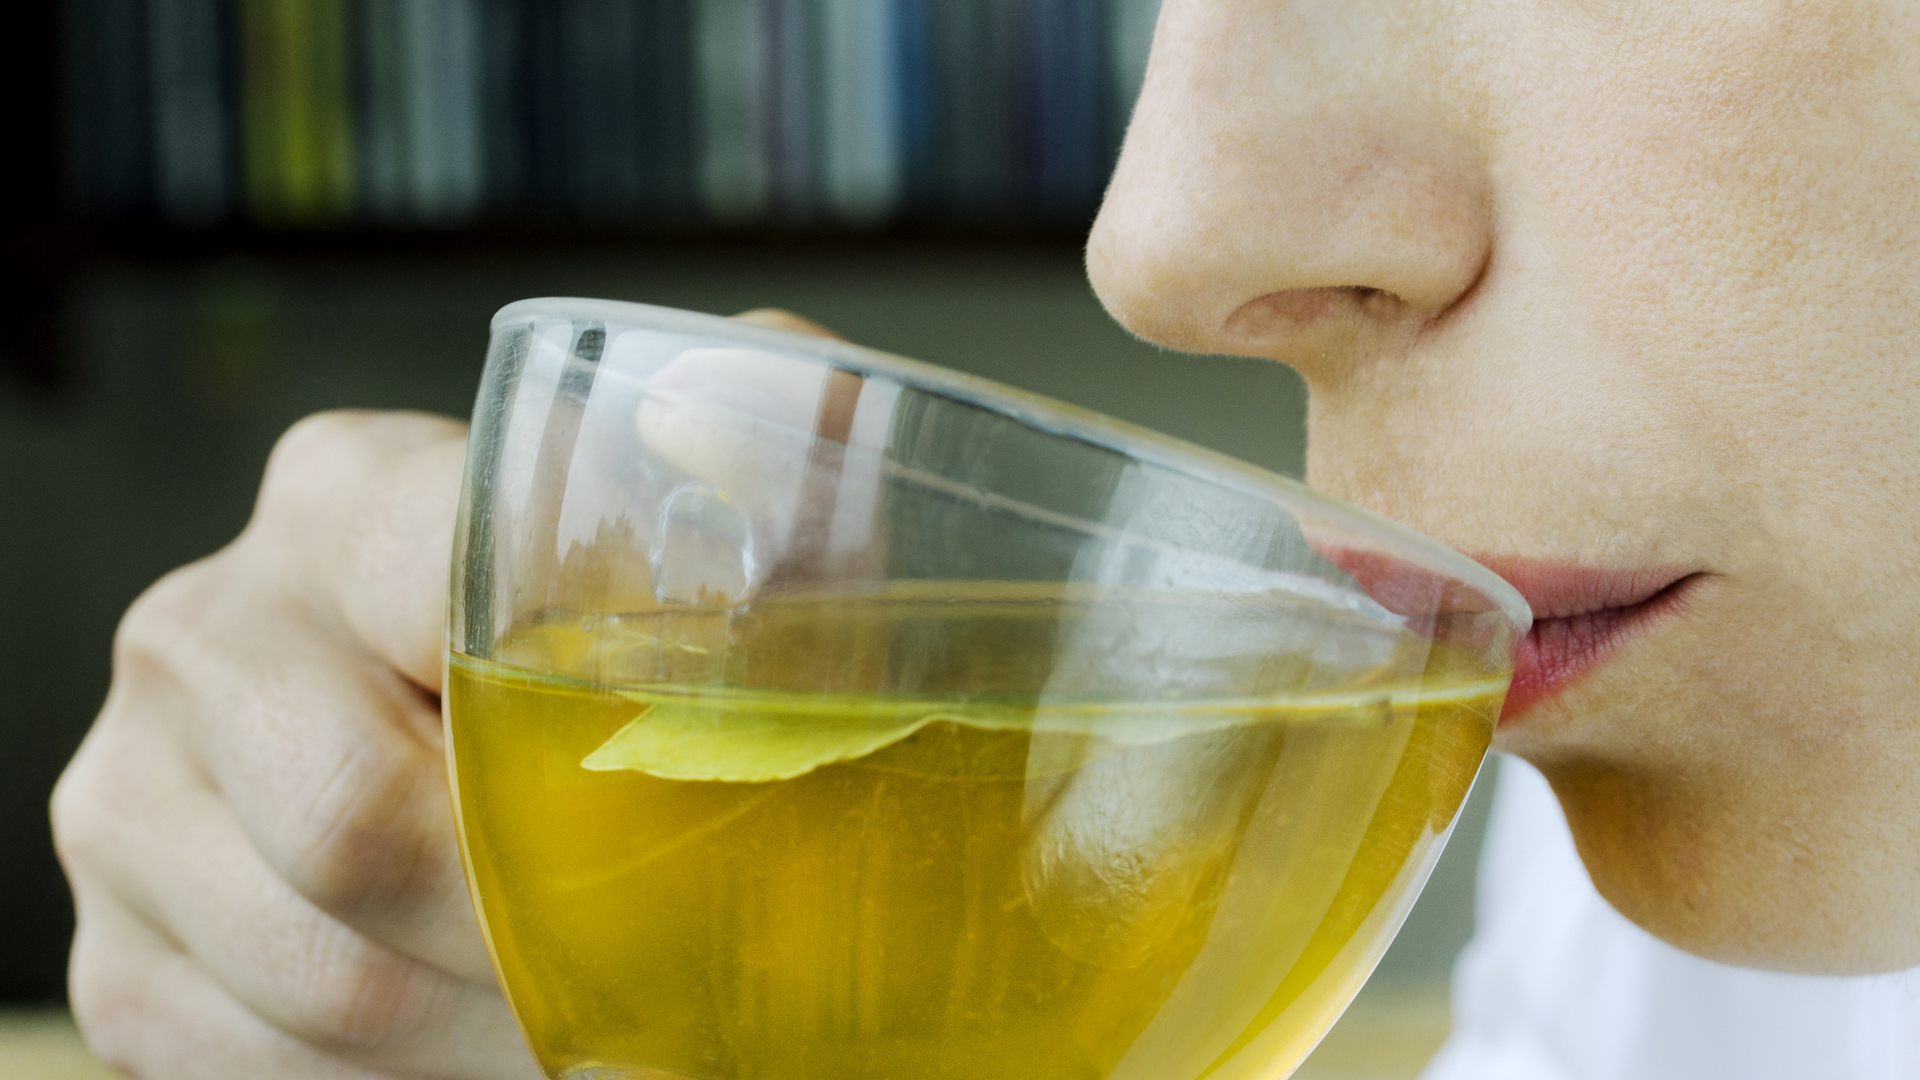 Los ensayos clínicos muestran que el consumo regular de té, especialmente el té verde, puede mejorar ligeramente la presión arterial y el colesterol (Getty Images)